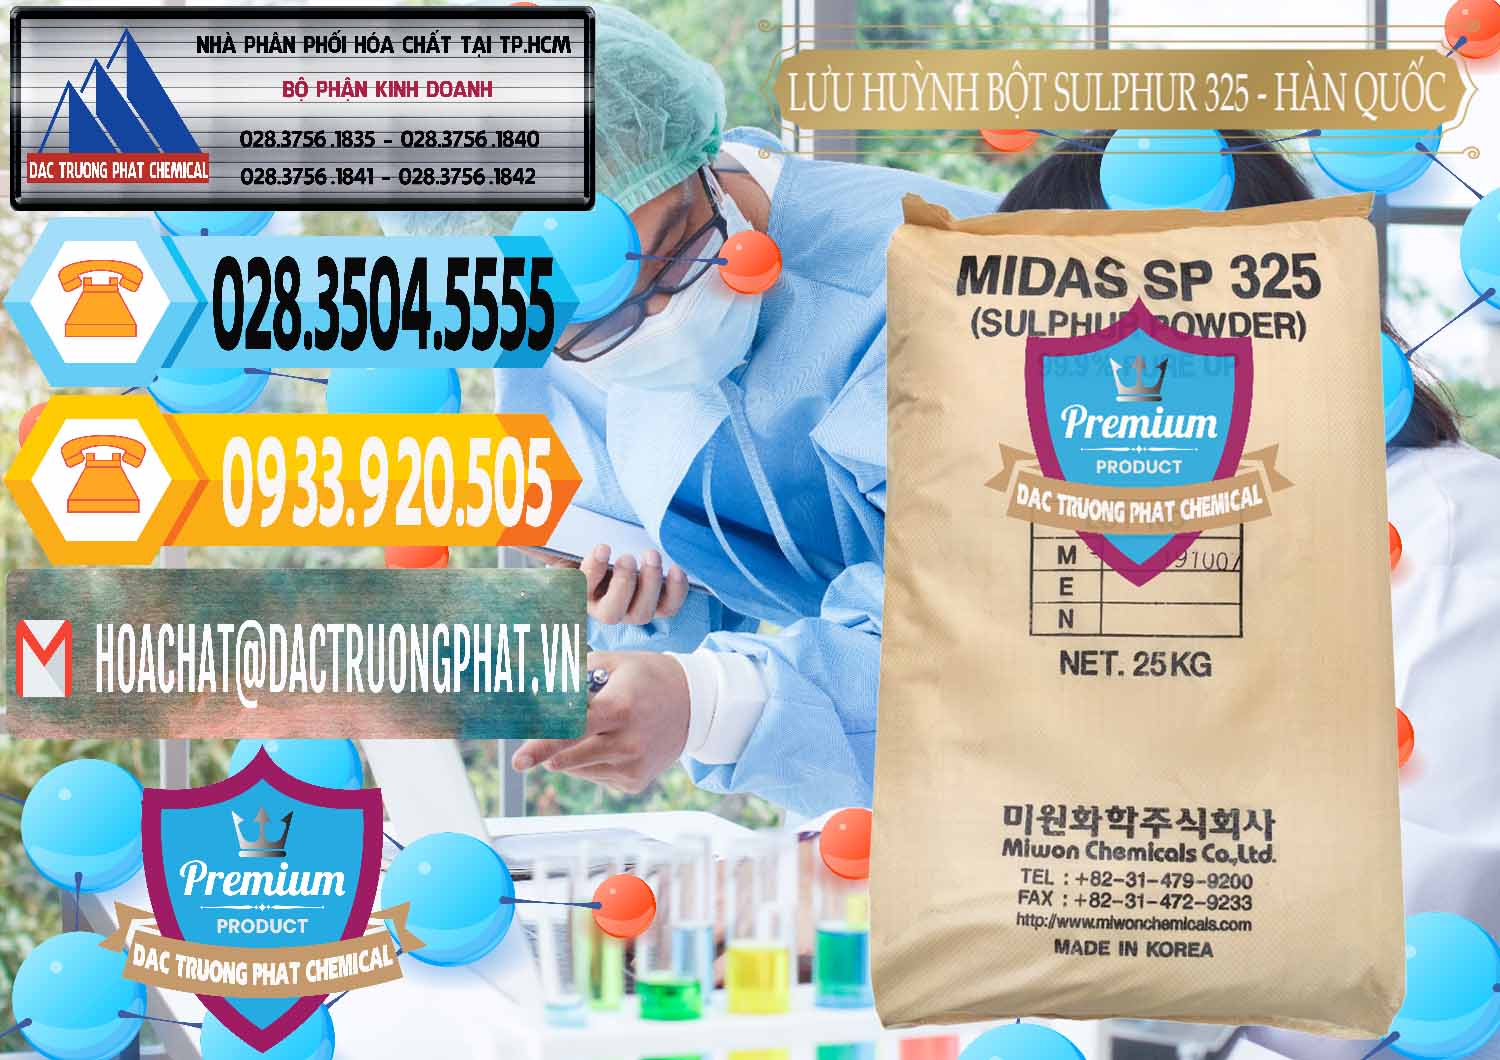 Công ty bán ( phân phối ) Lưu huỳnh Bột - Sulfur Powder Midas SP 325 Hàn Quốc Korea - 0198 - Chuyên cung cấp & phân phối hóa chất tại TP.HCM - hoachattayrua.net